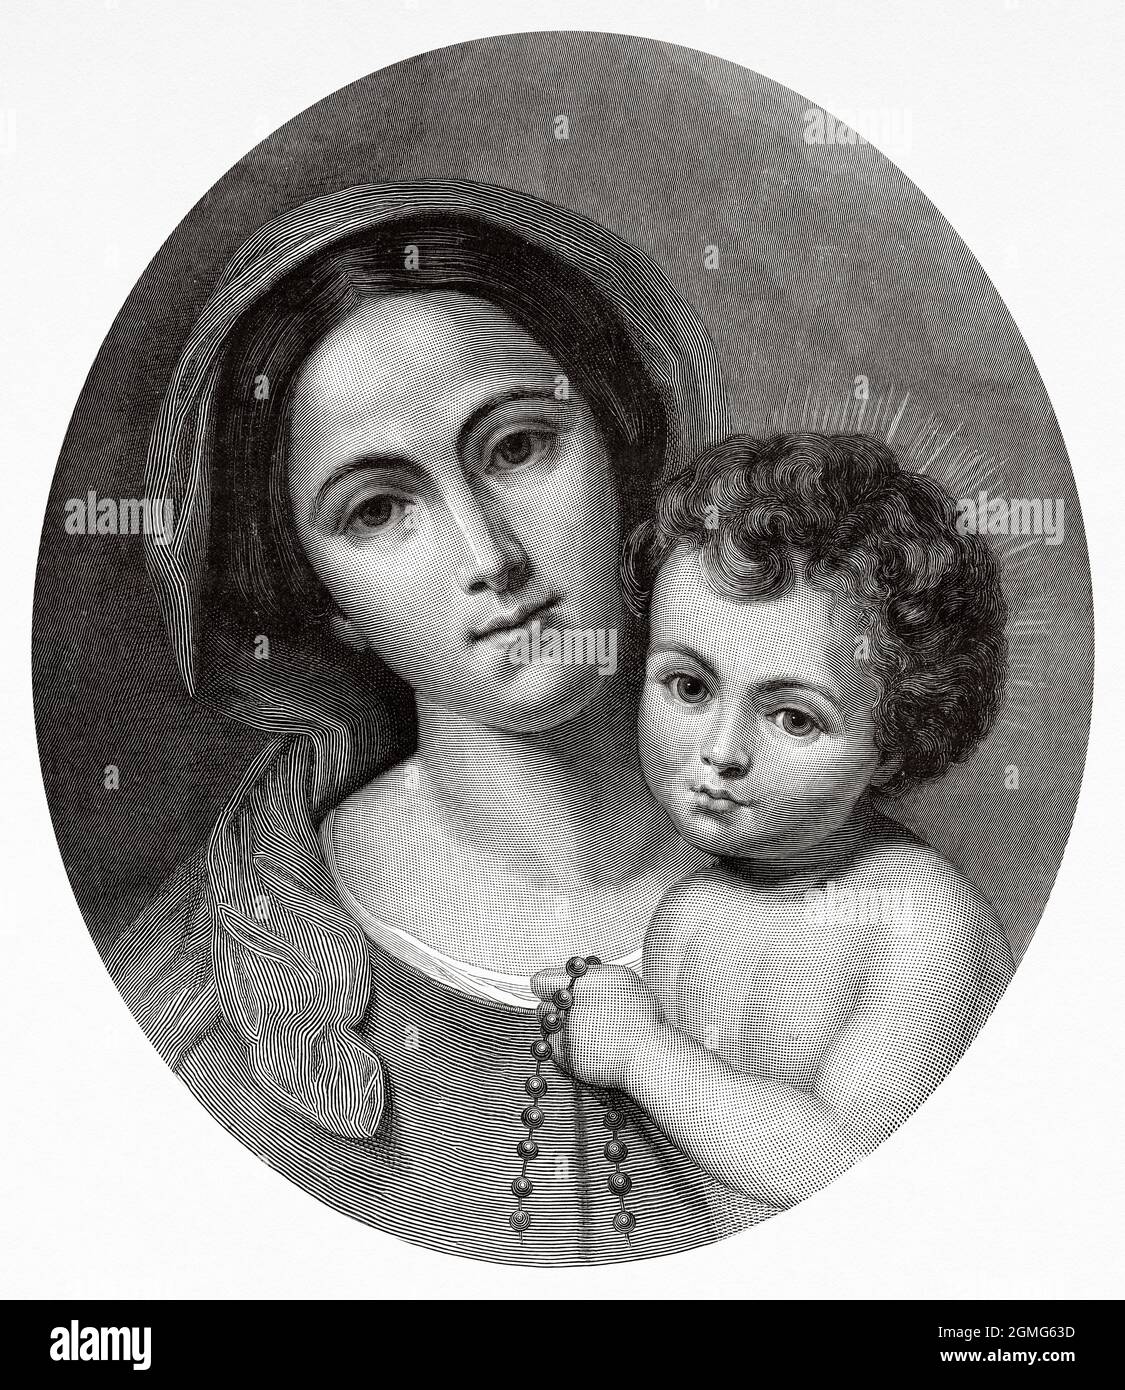 La Vierge Marie avec le bébé Jésus sur ses genoux, peinture de Bartolomé Esteban Murillo (1618-1682) était un peintre baroque espagnol. Ancienne illustration gravée du XIXe siècle de la Ilustración Artística 1882 Banque D'Images